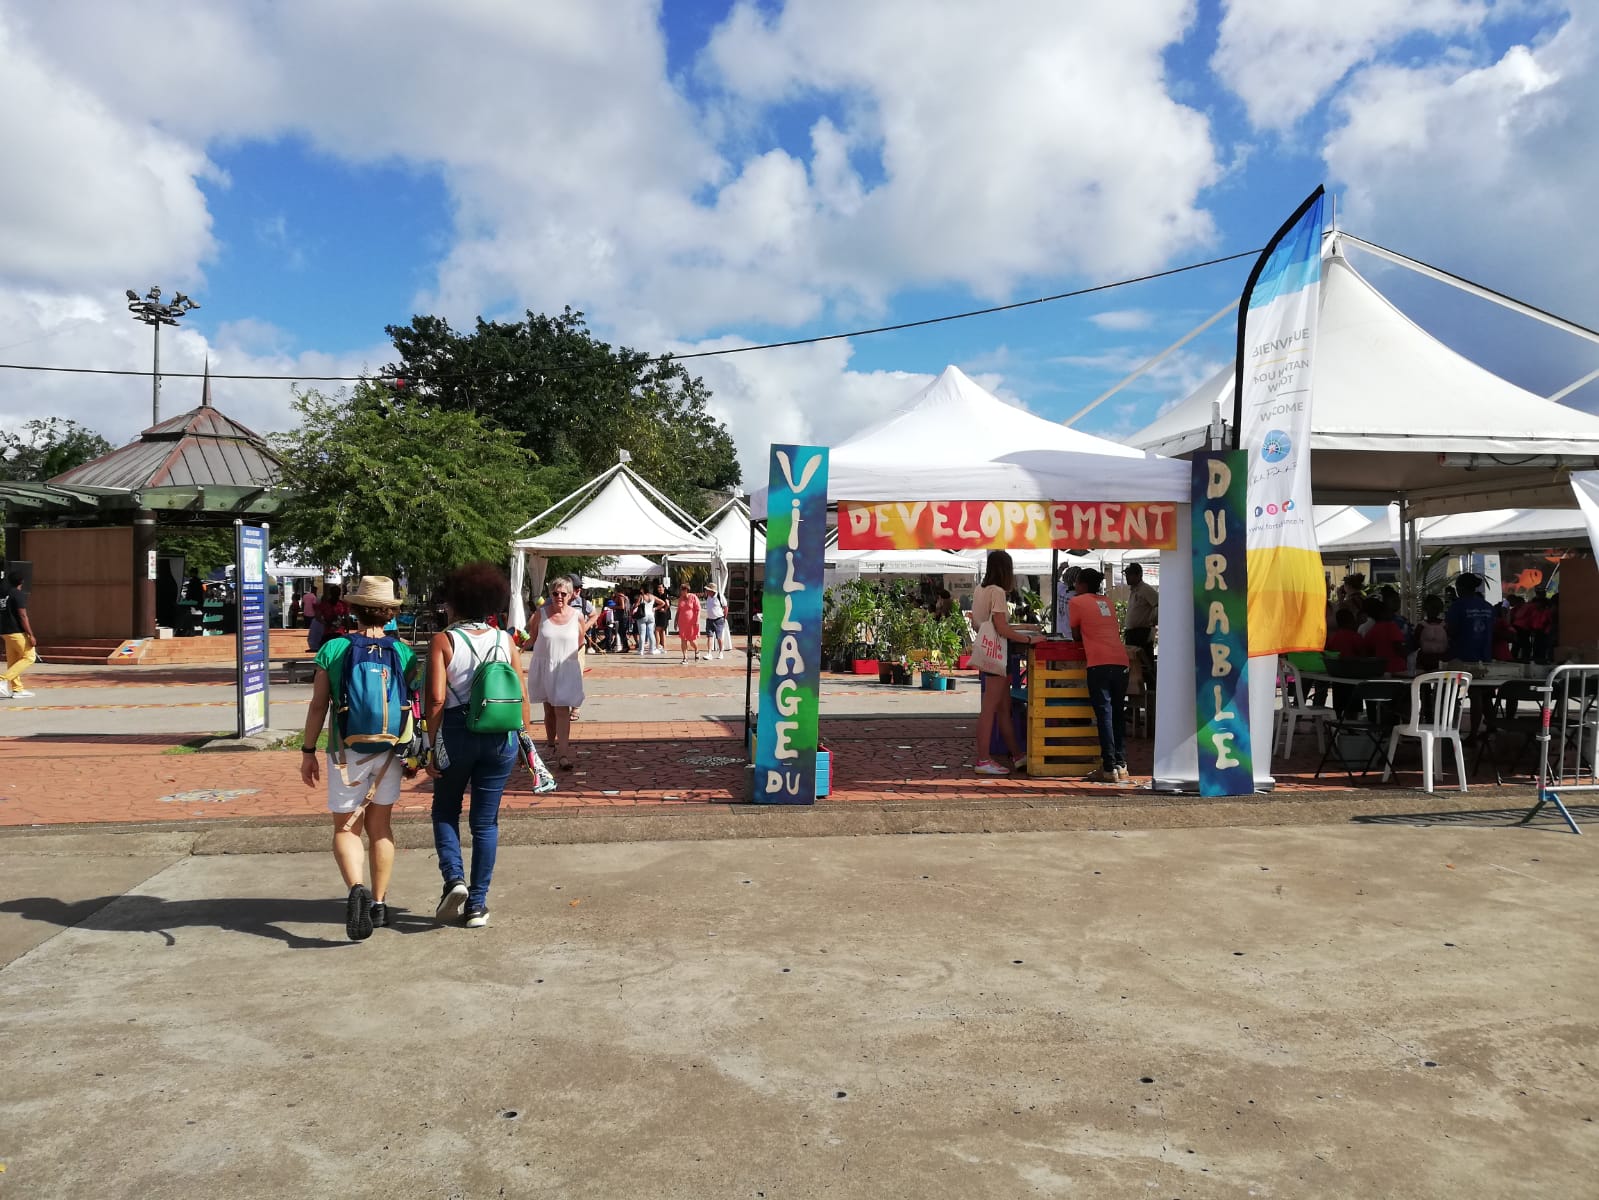     Première édition du village du développement durable en Martinique

